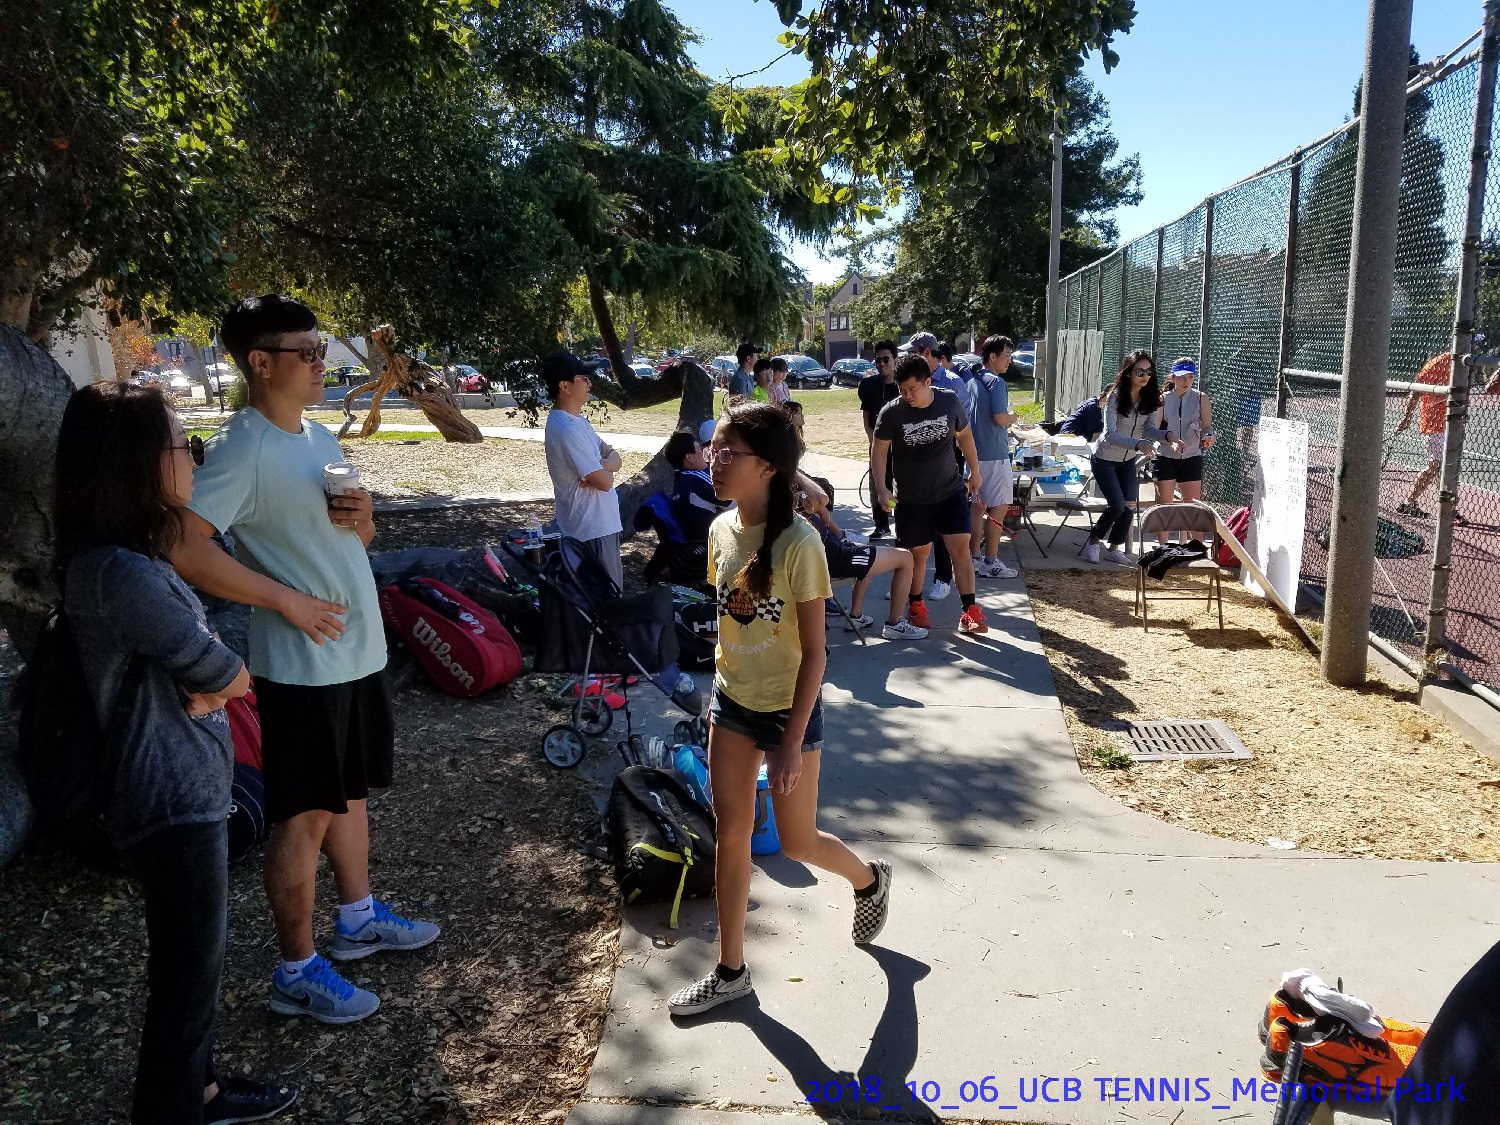 resized_2018_10_06_UCB Tennis at Memorial Park_112939.jpg